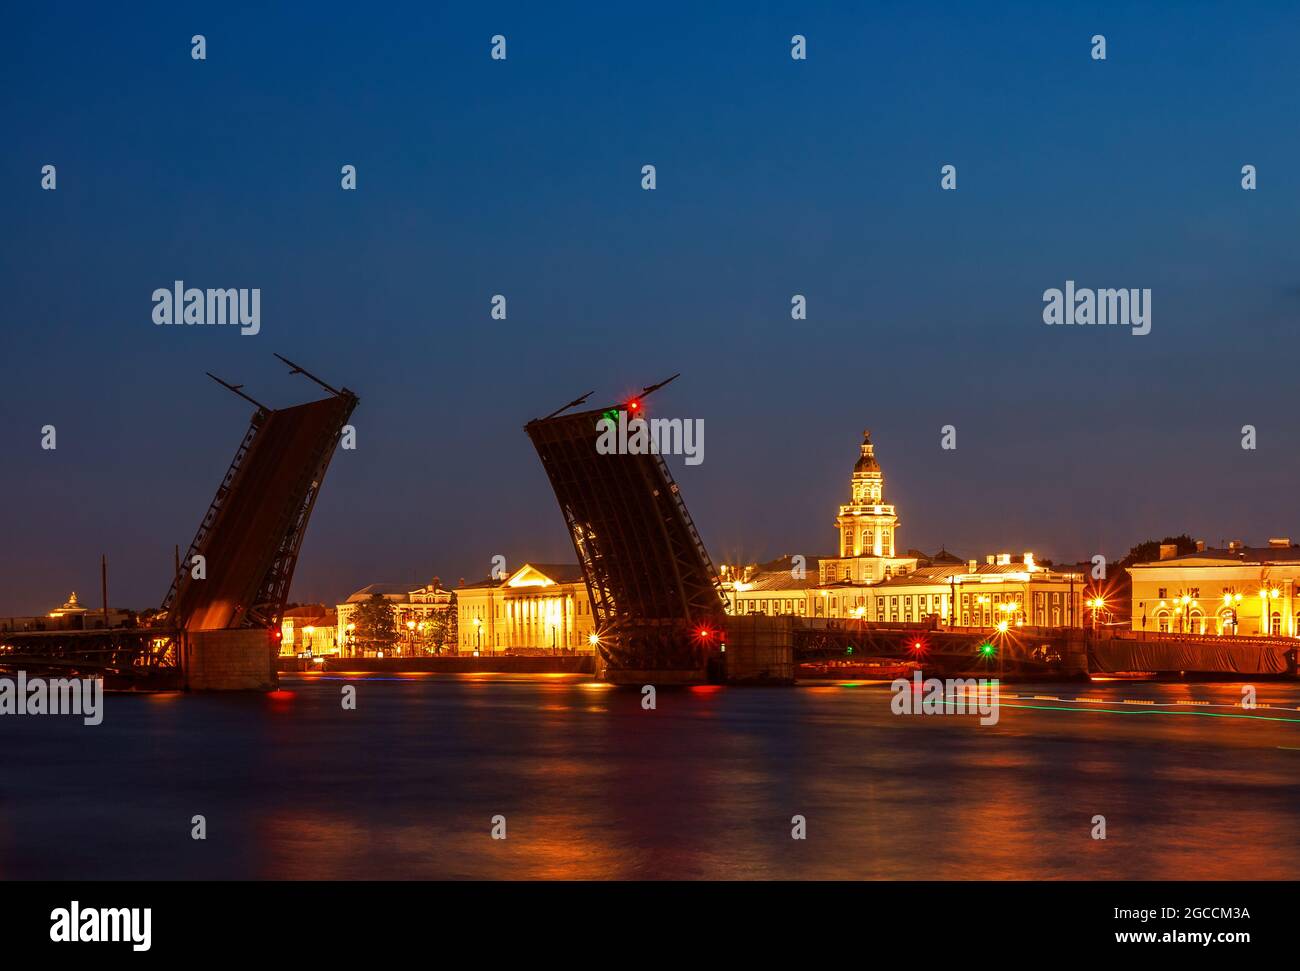 Blick auf die Kunstkamera und die erhöhte Palastbrücke in den sommerlichen weißen Nächten, St. Petersburg, Russland. Stockfoto